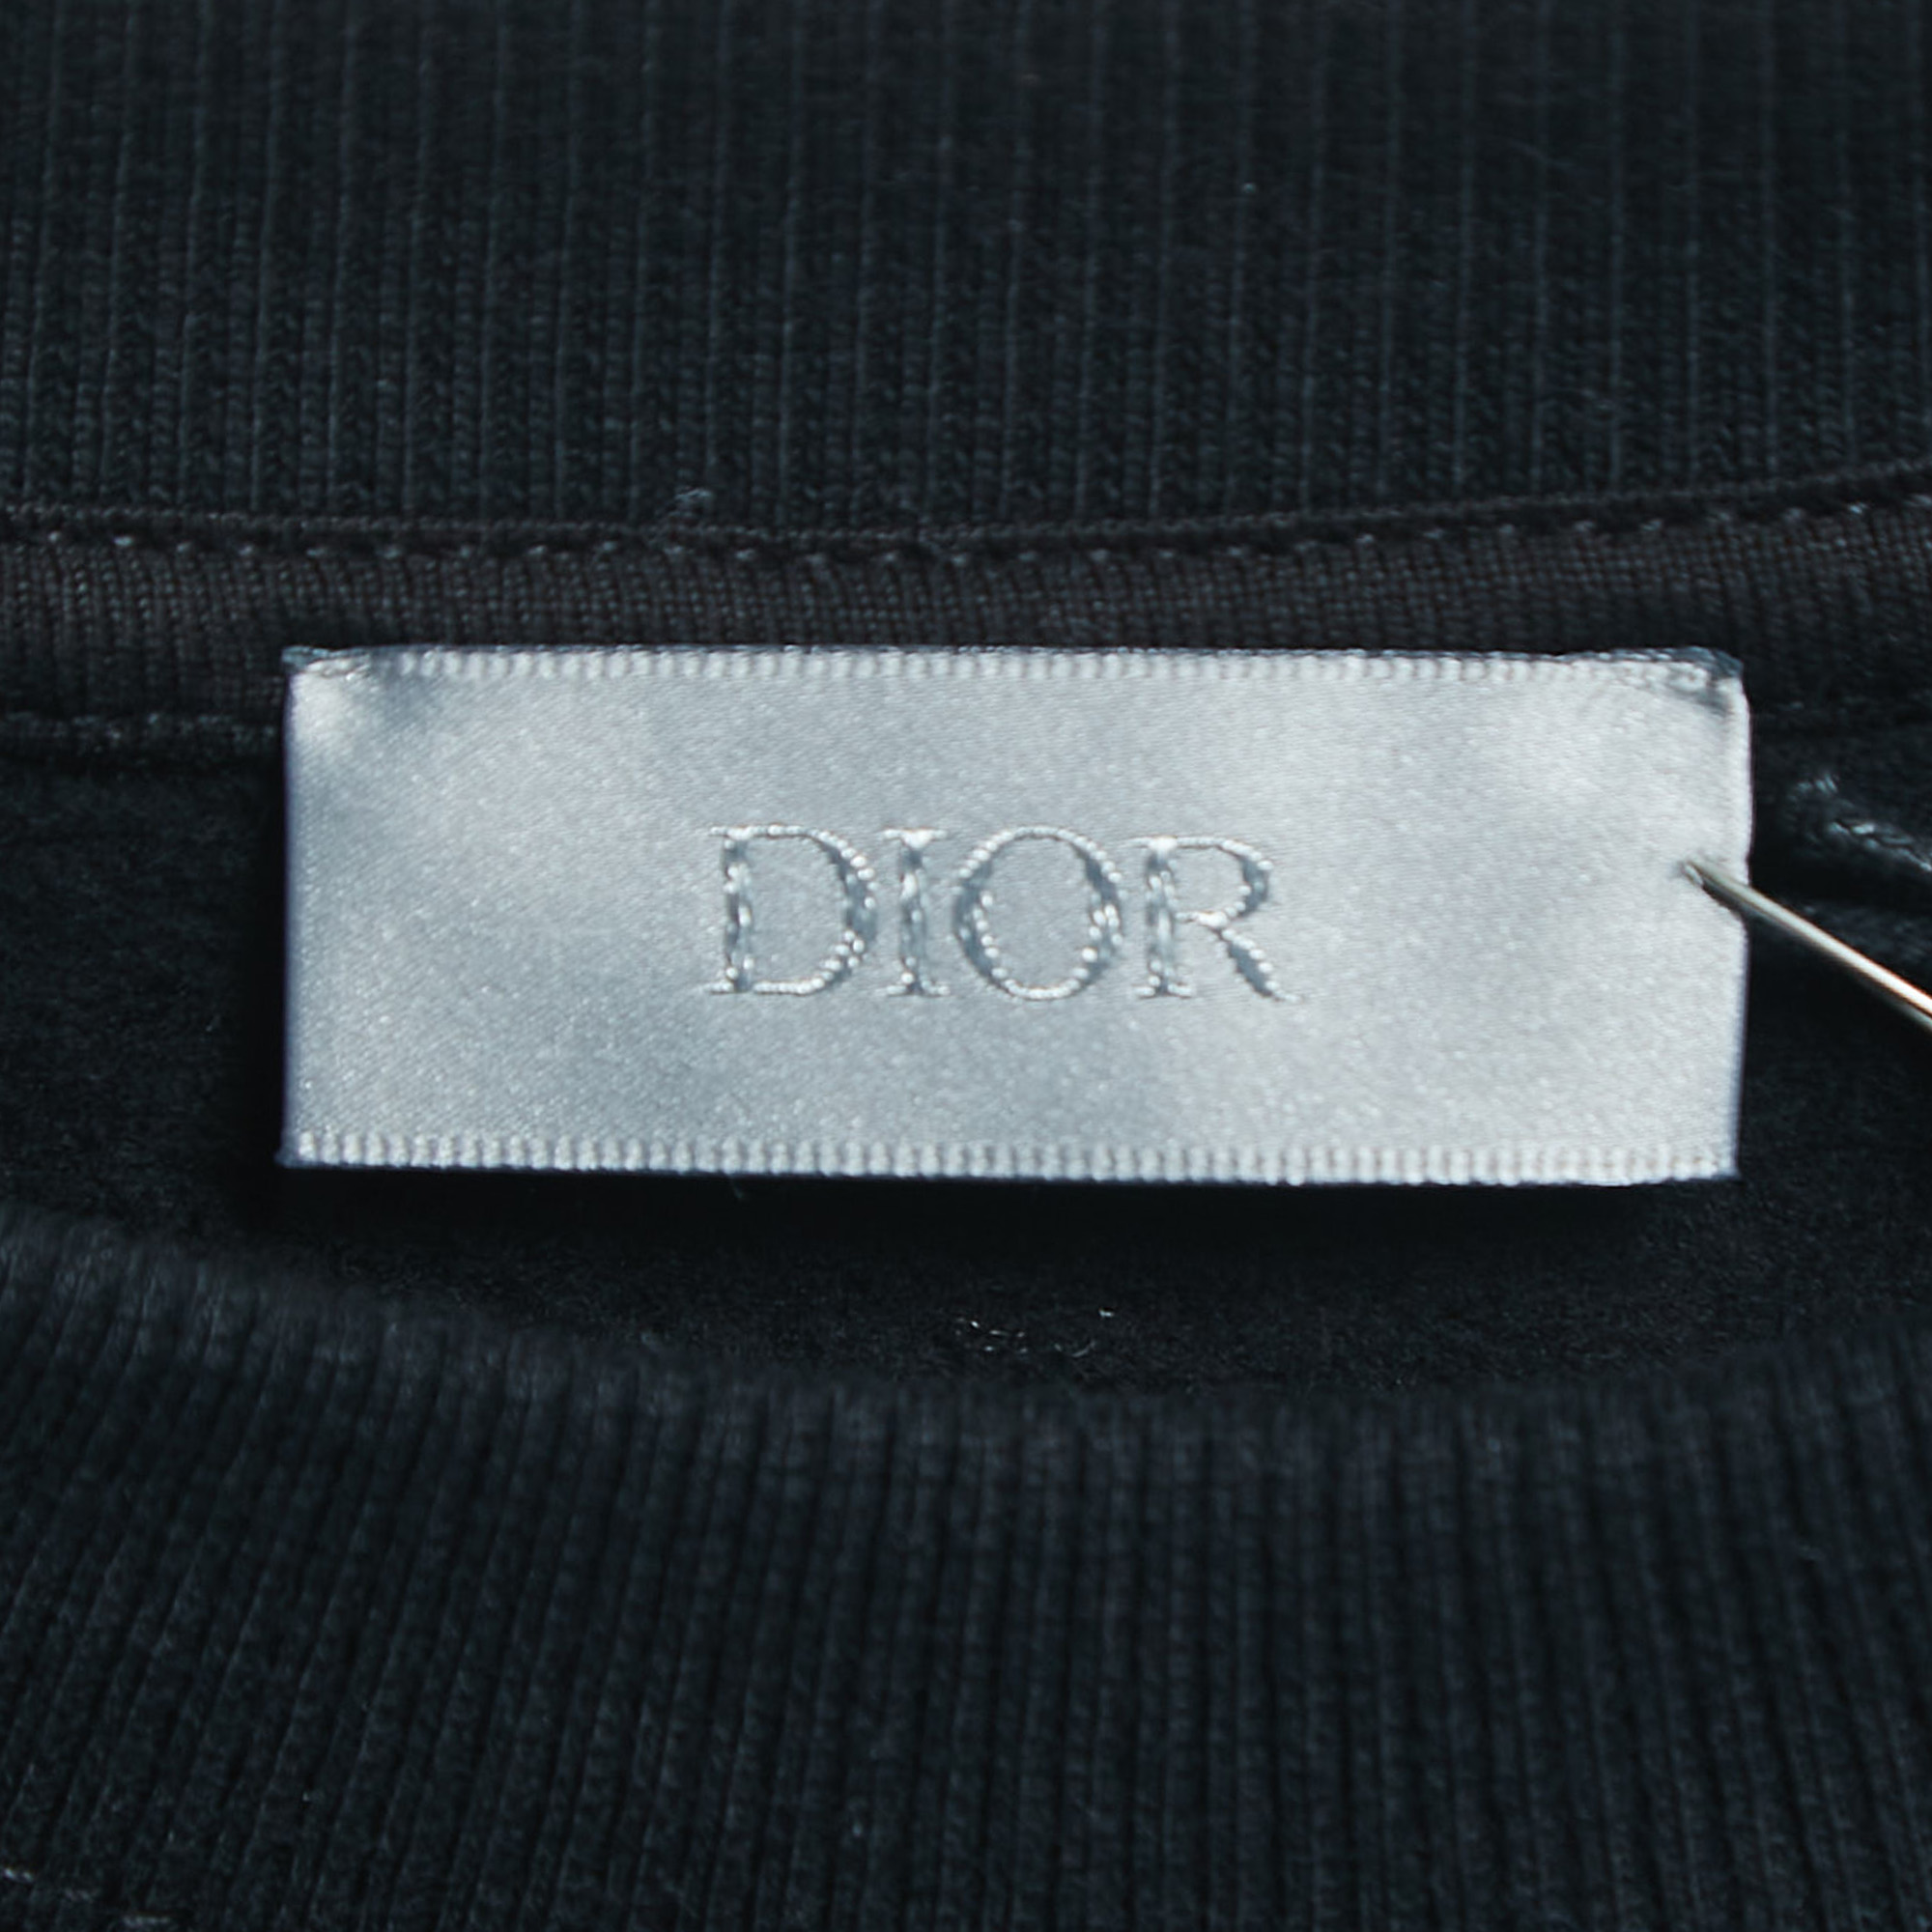 Dior Black Logo Embroidered Cotton Crew Neck Sweatshirt S